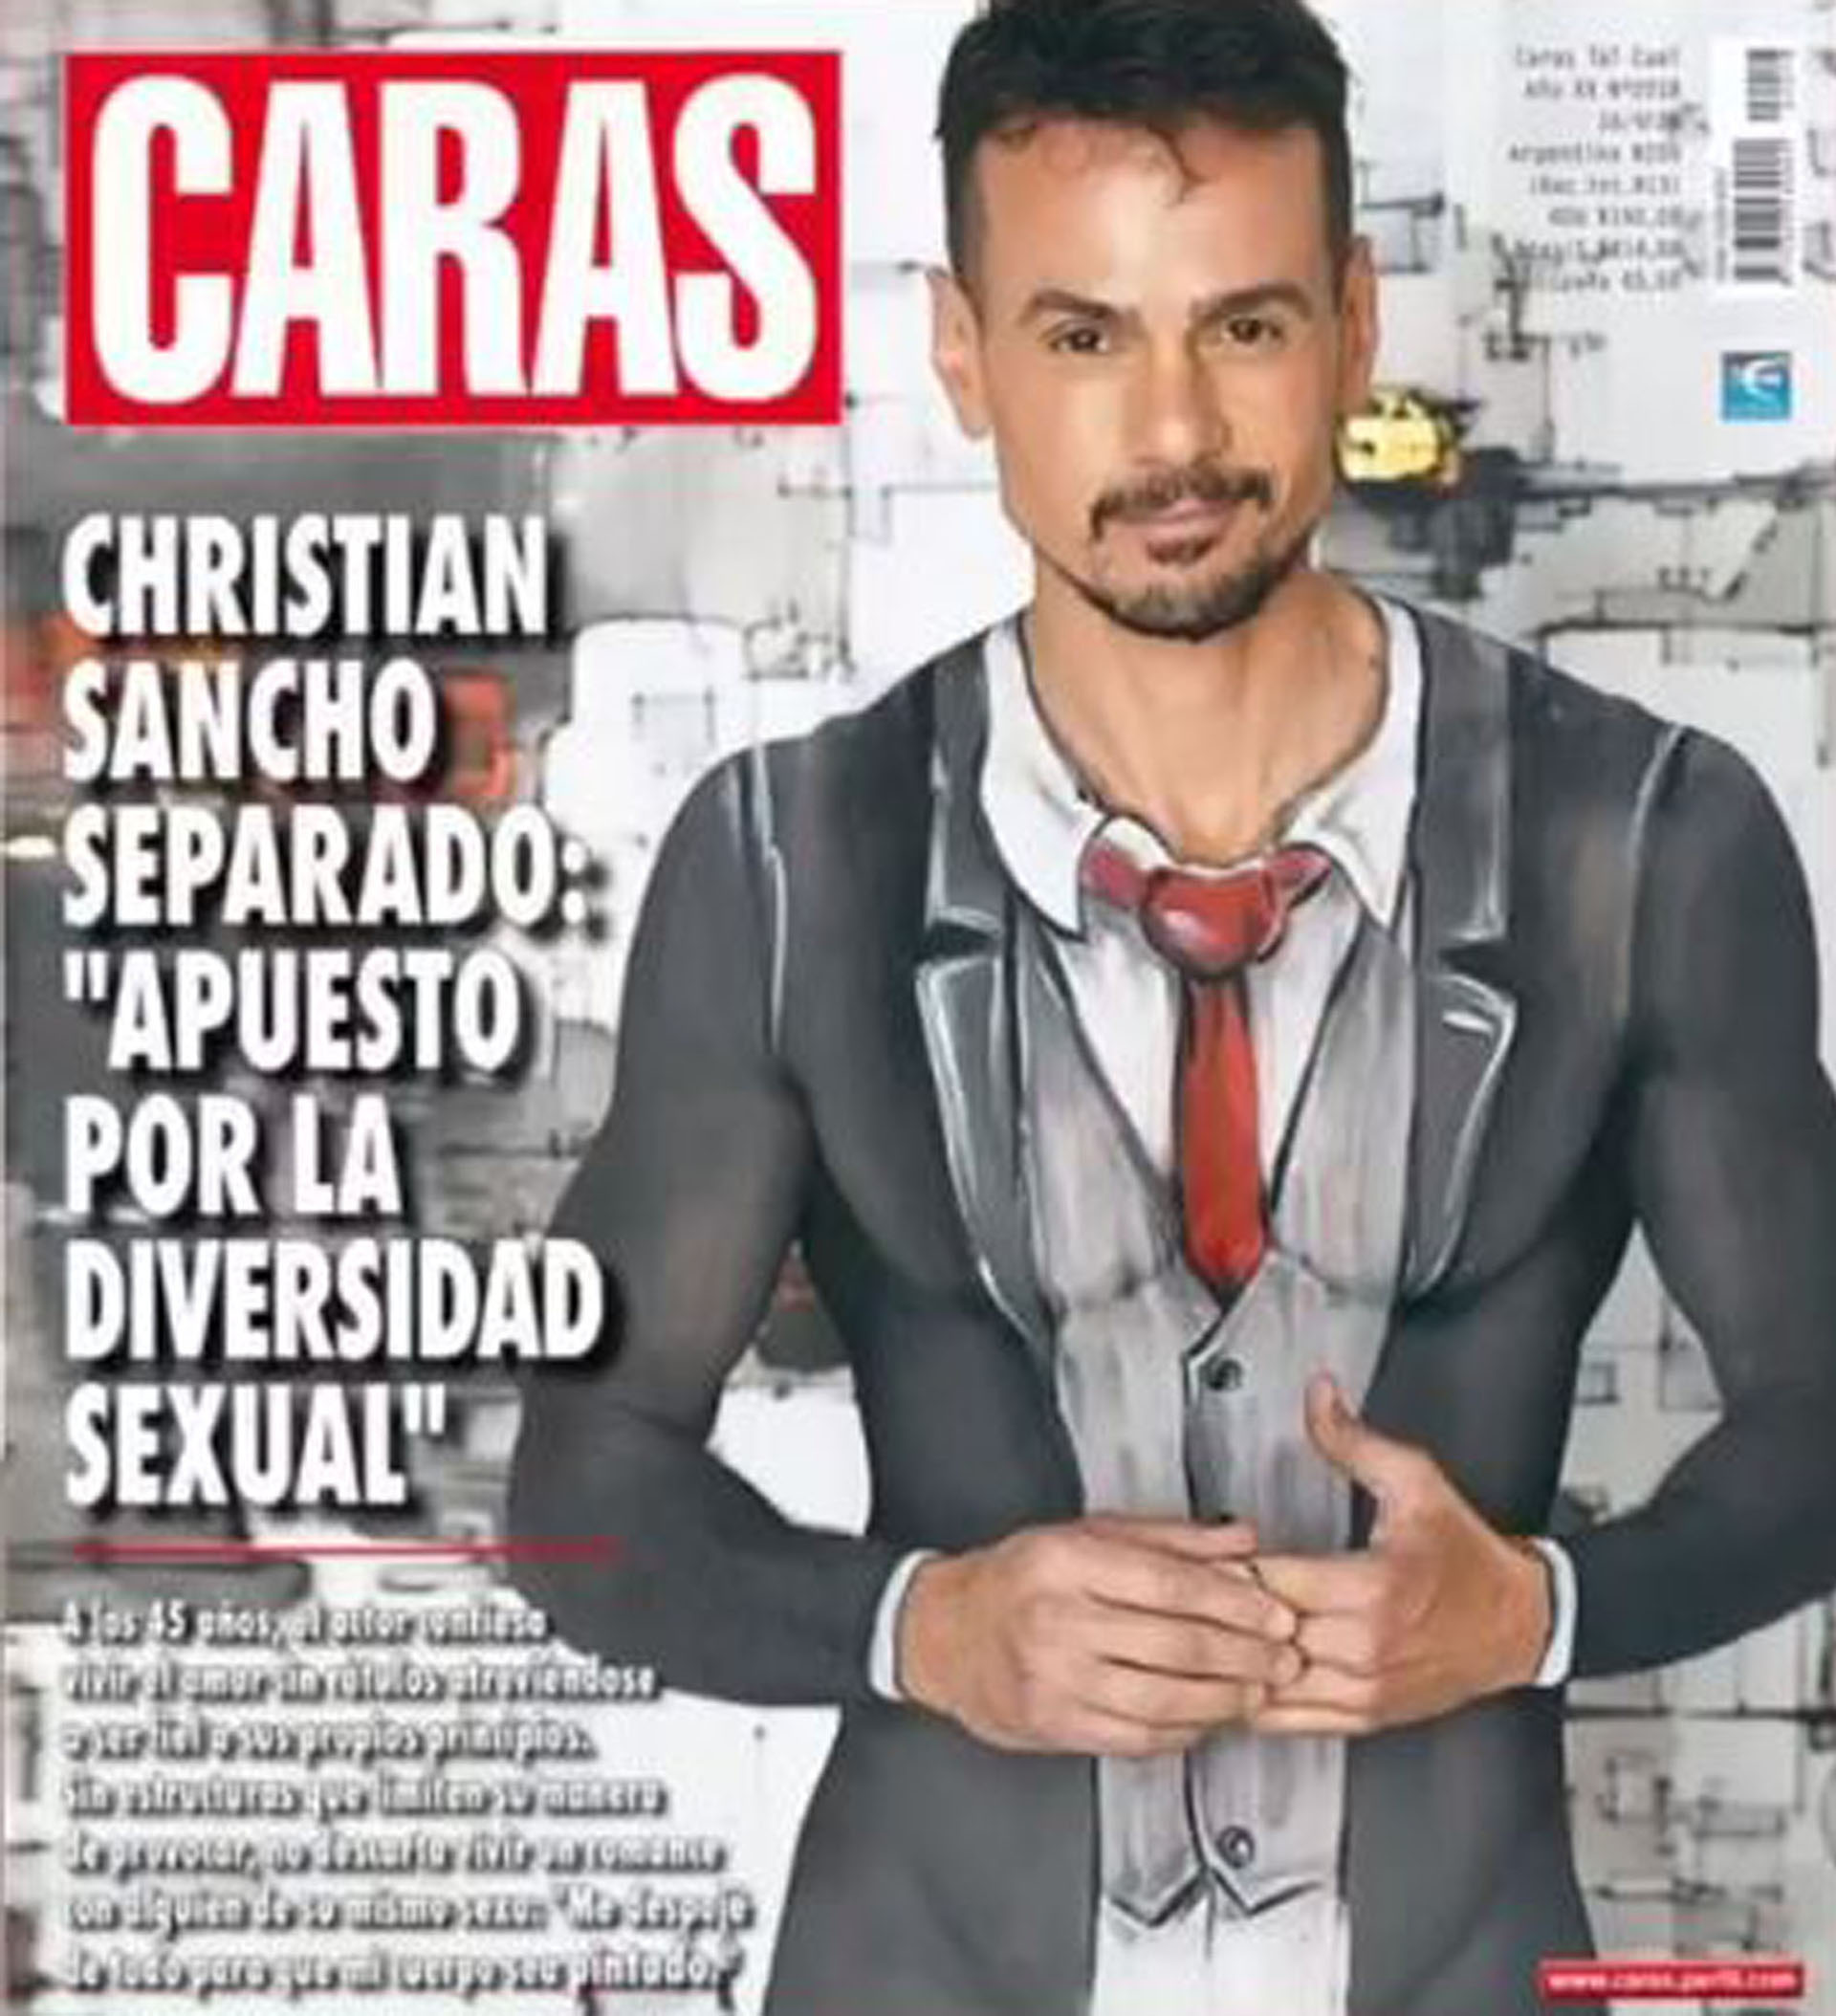 Christian Sancho generó revuelo al asegurar que apostaba por la diversidad sexual (Foto: Instagram)